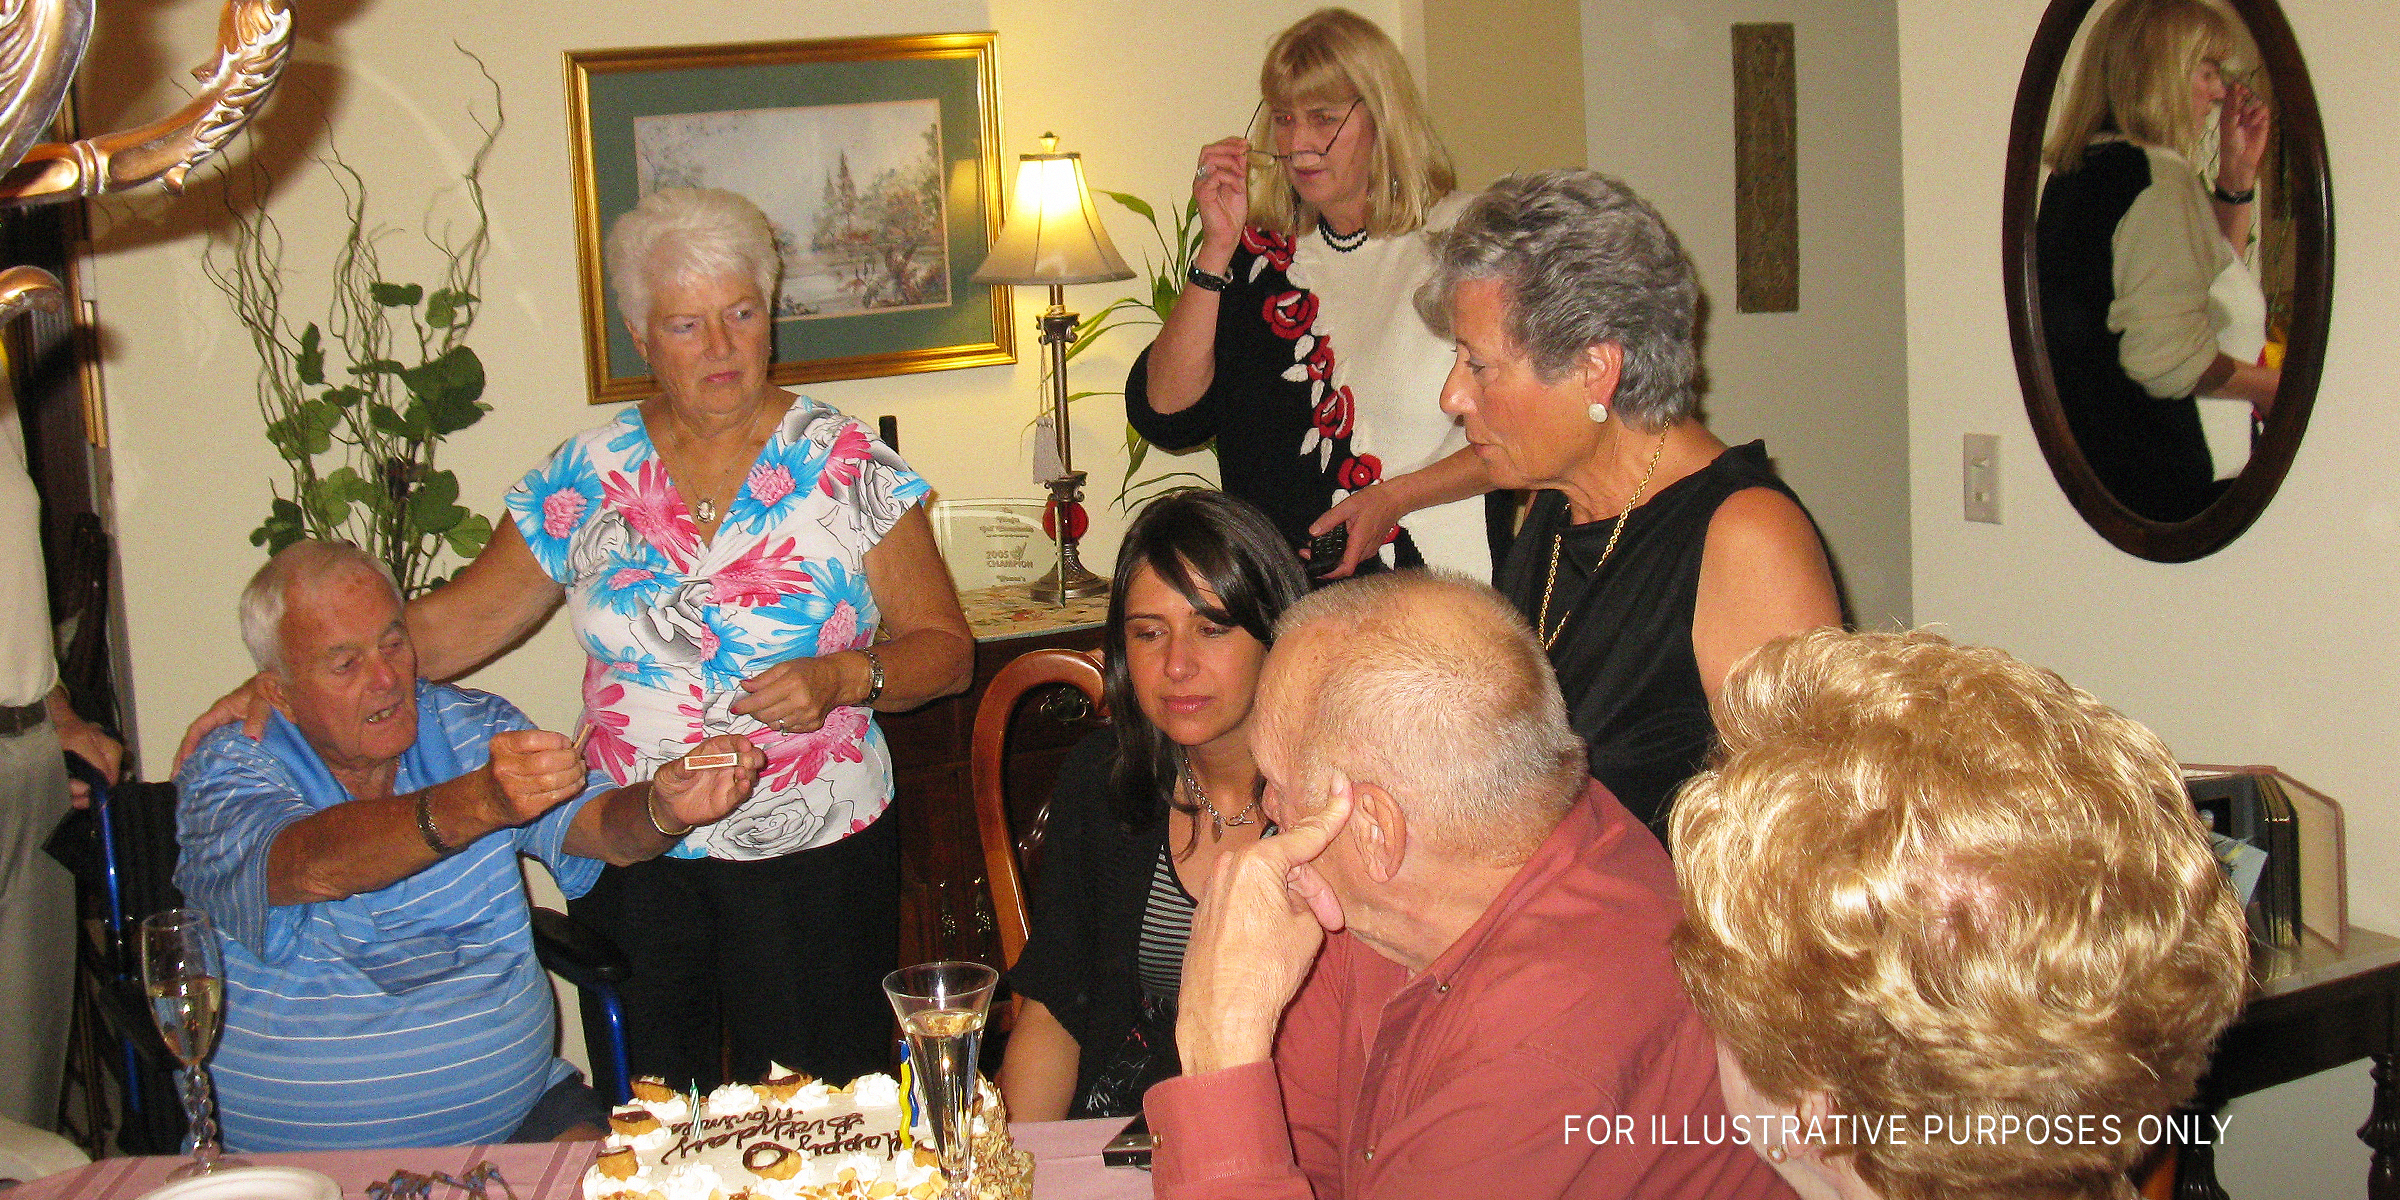 Familie und Freunde bei einer Geburtstagsparty | Quelle: Flickr.com/(CC BY 2.0) von Stevie Rocco